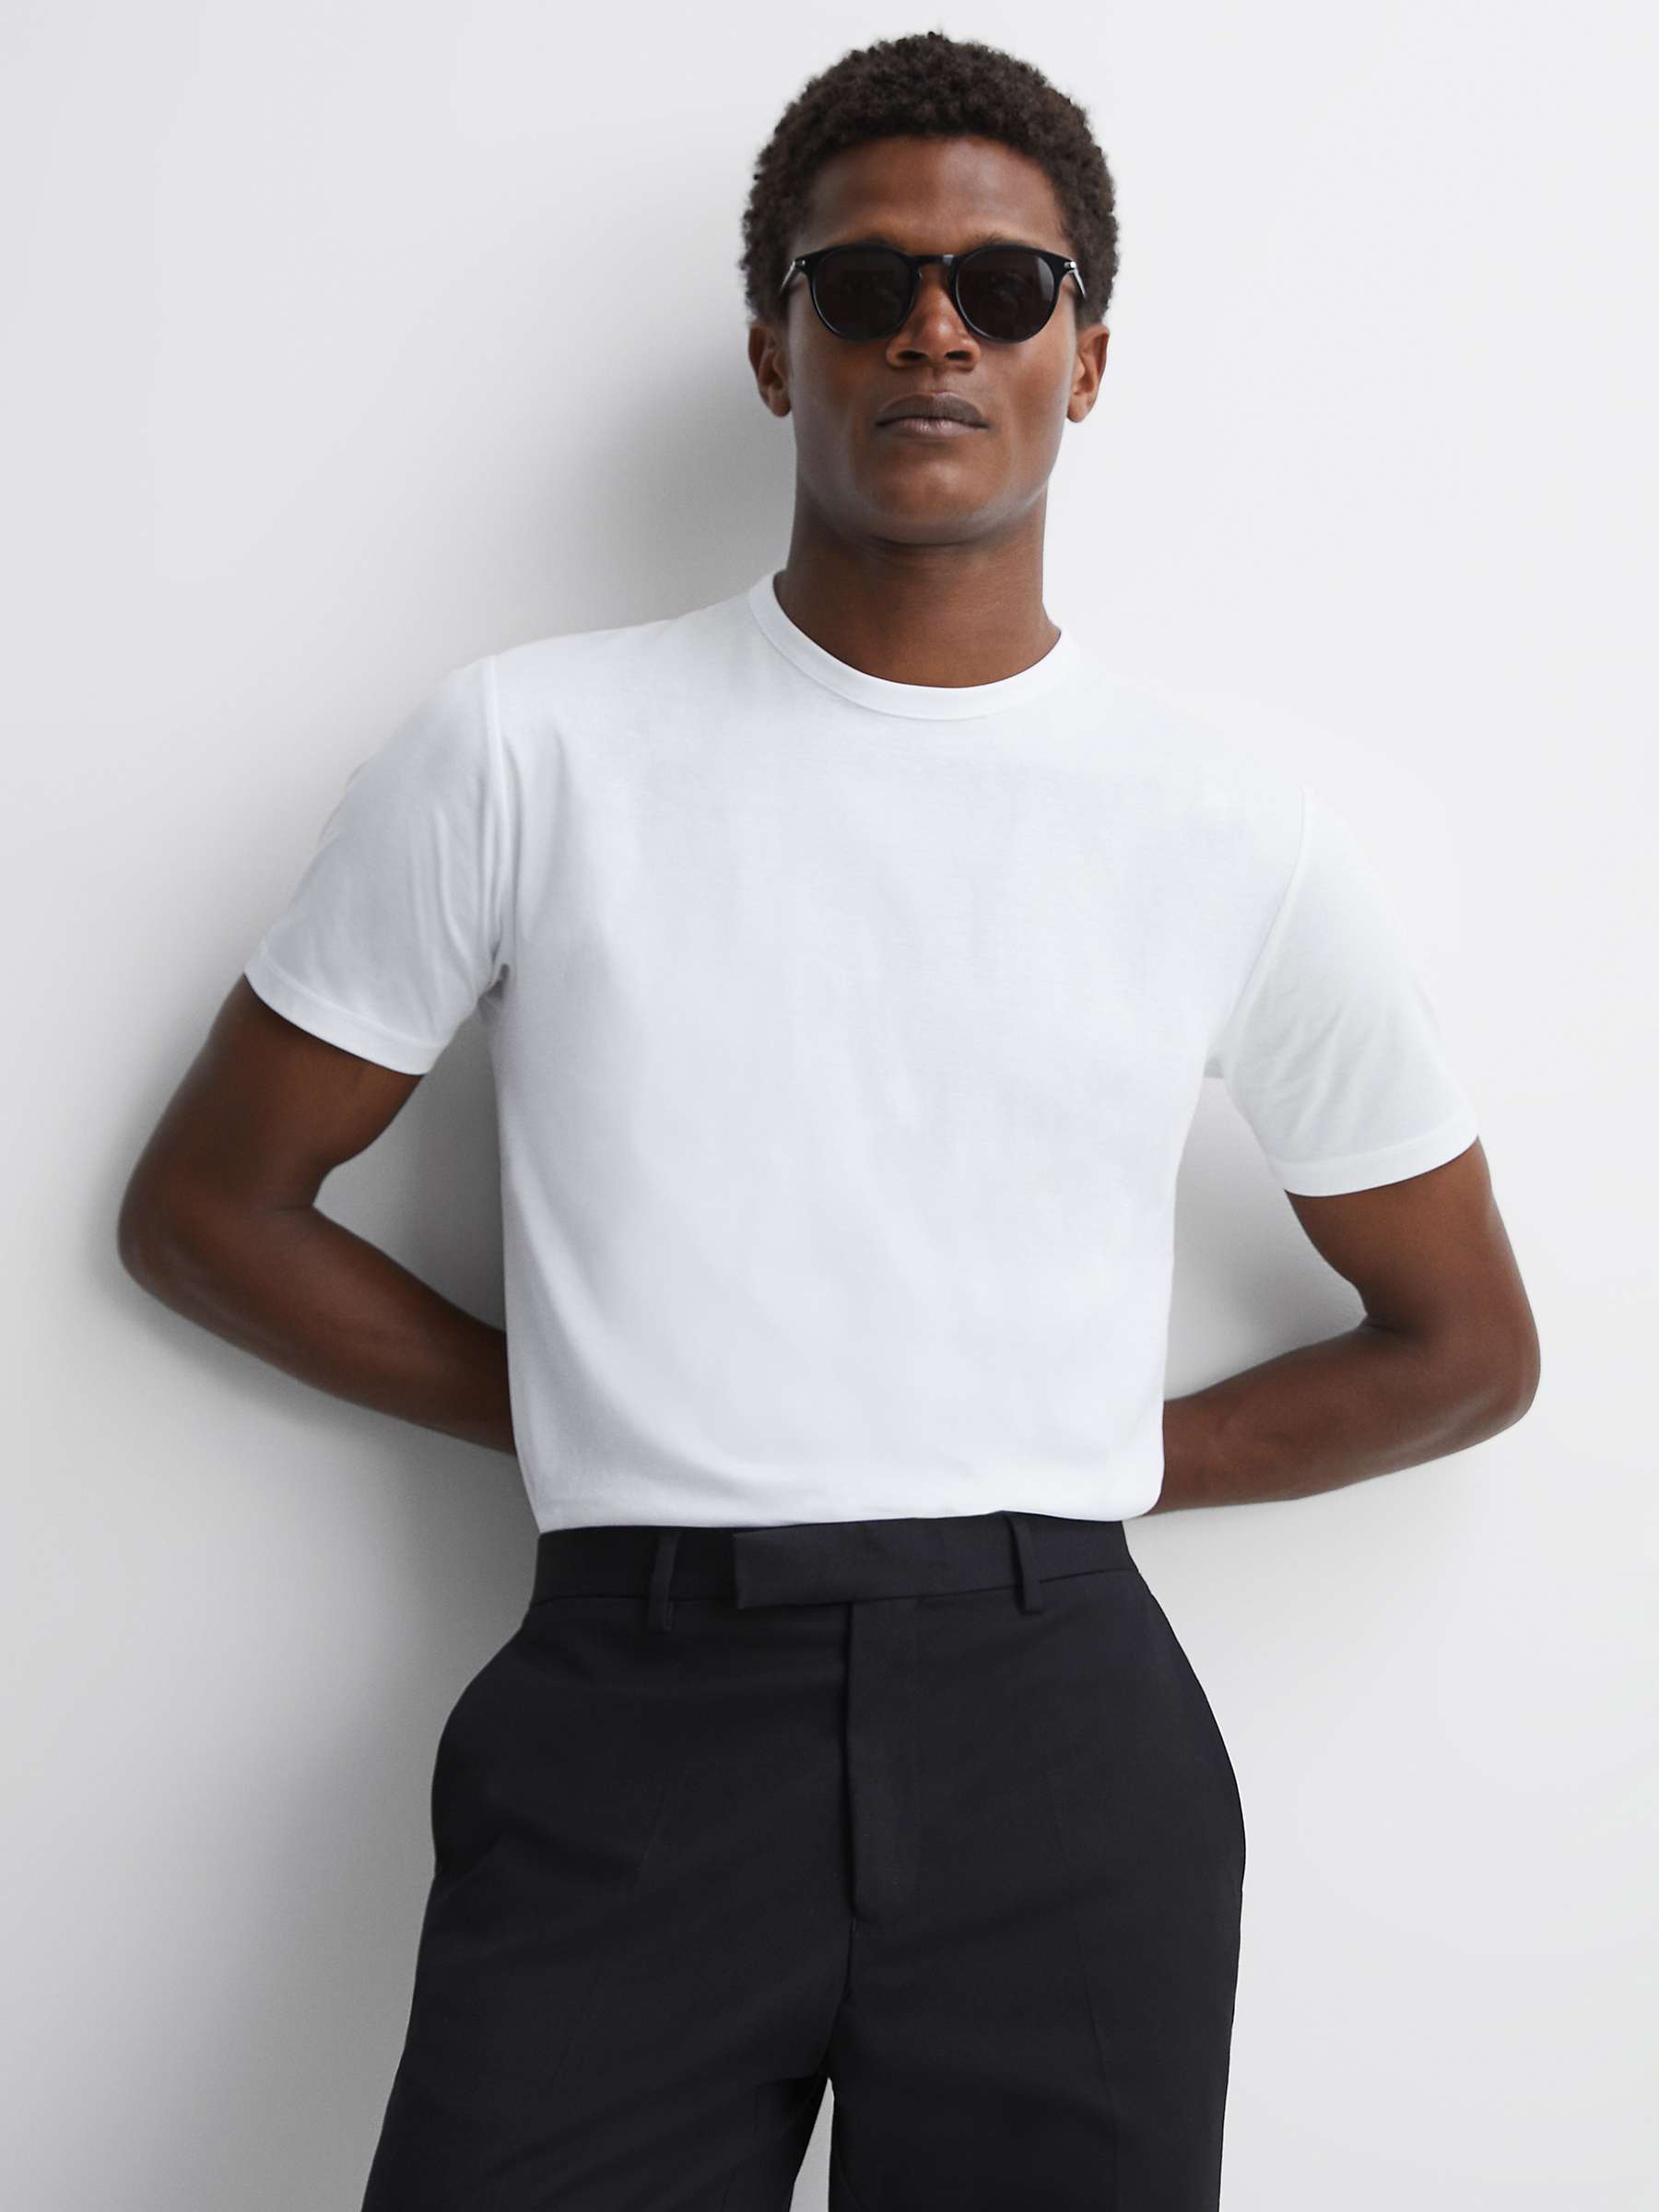 Buy Reiss Capri Slim Fit T-Shirt Online at johnlewis.com